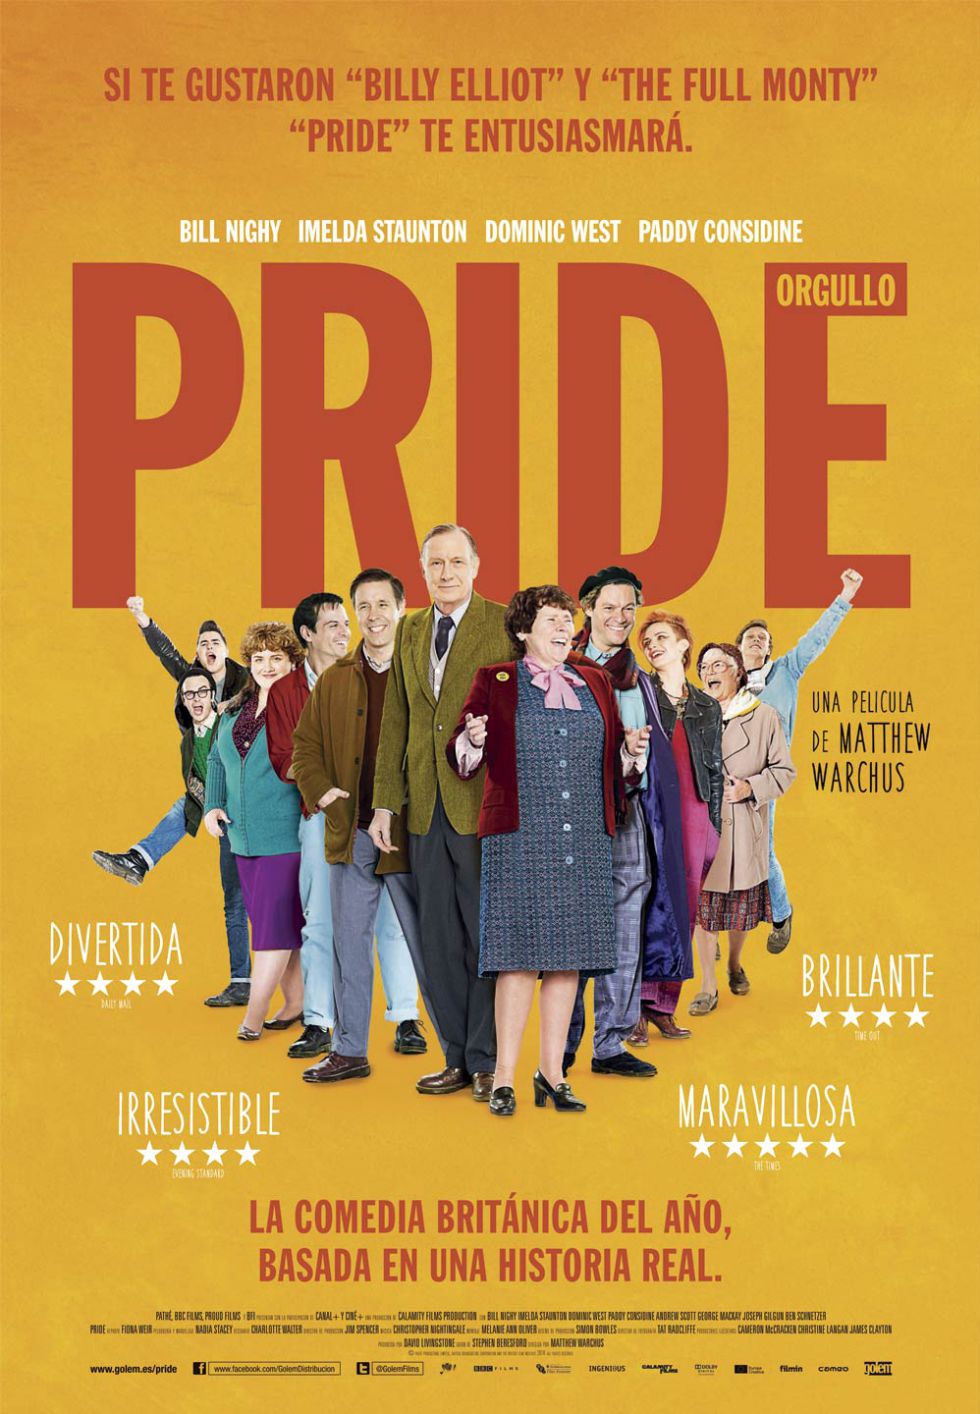 'Pride', la comedia británica del año (basada en hechos reales)